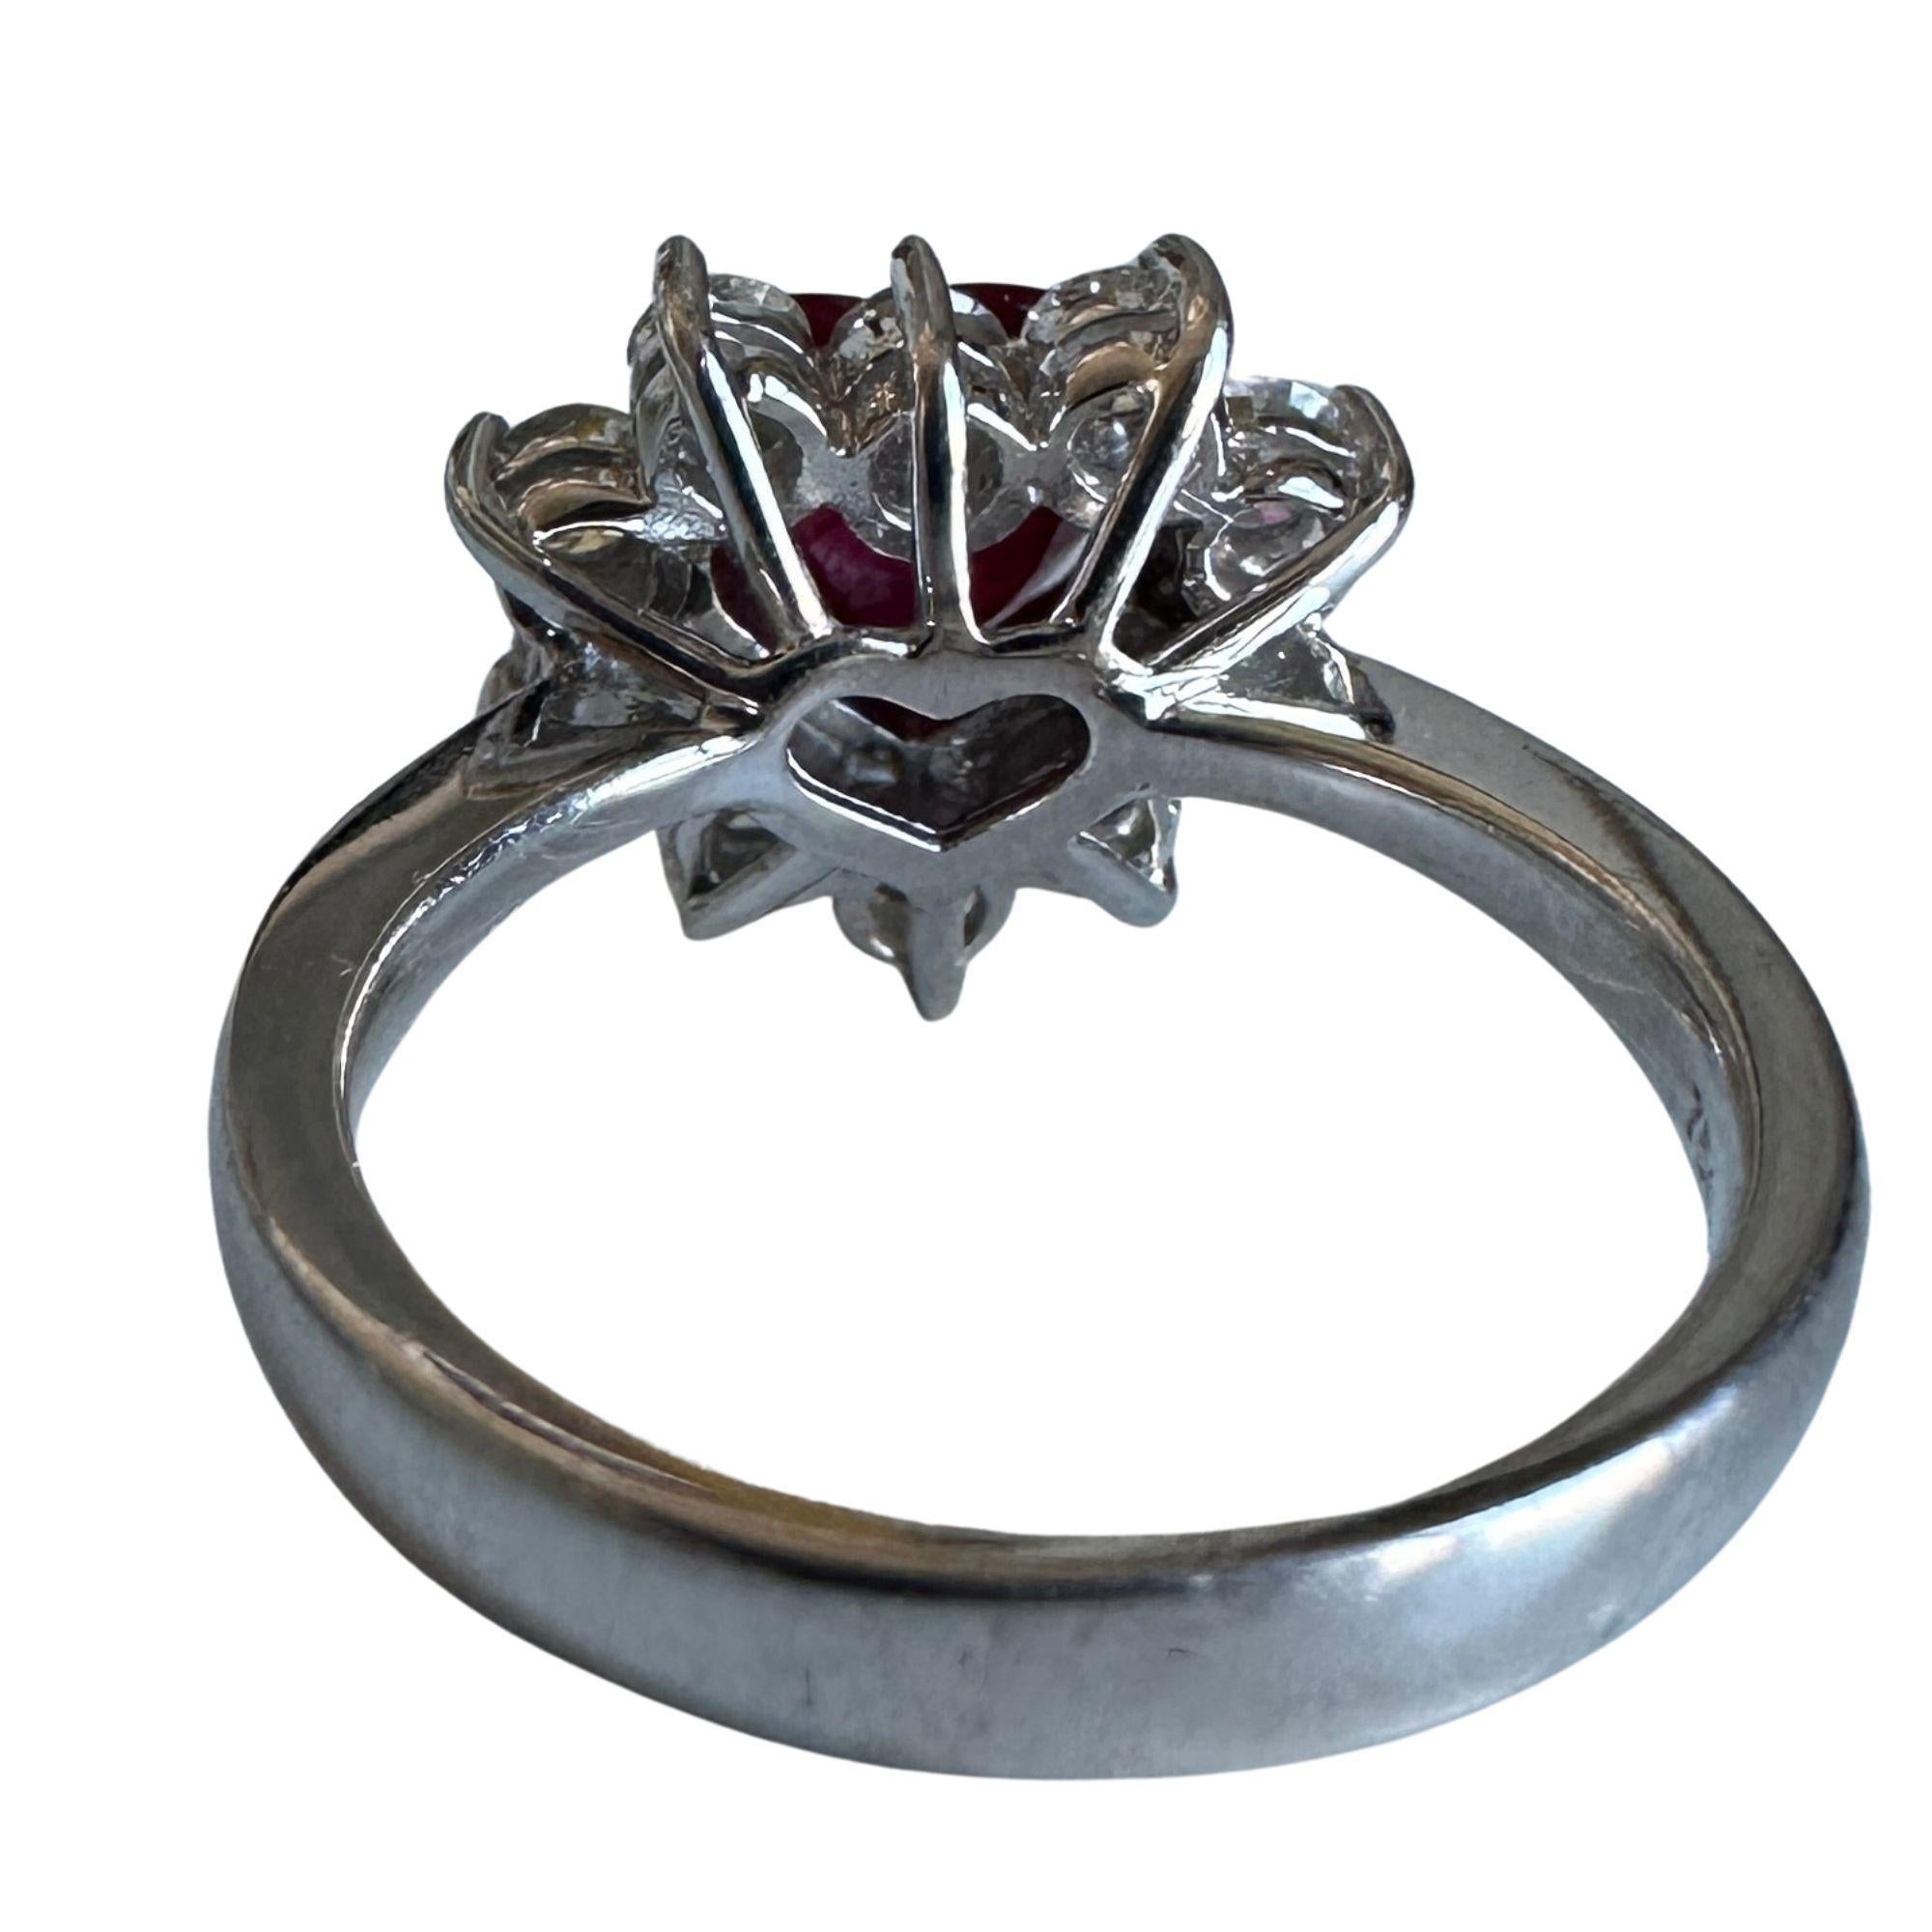 Dieser 18-karätige Ring in Herzform mit Diamanten und Rubinen ist ein wahres Geschenk für jemanden, den Sie lieben, oder um sich selbst zu verwöhnen. Der Rubin in der Mitte des Steins hat 1,61 Karat und ist von einem Halo aus funkelnden Diamanten